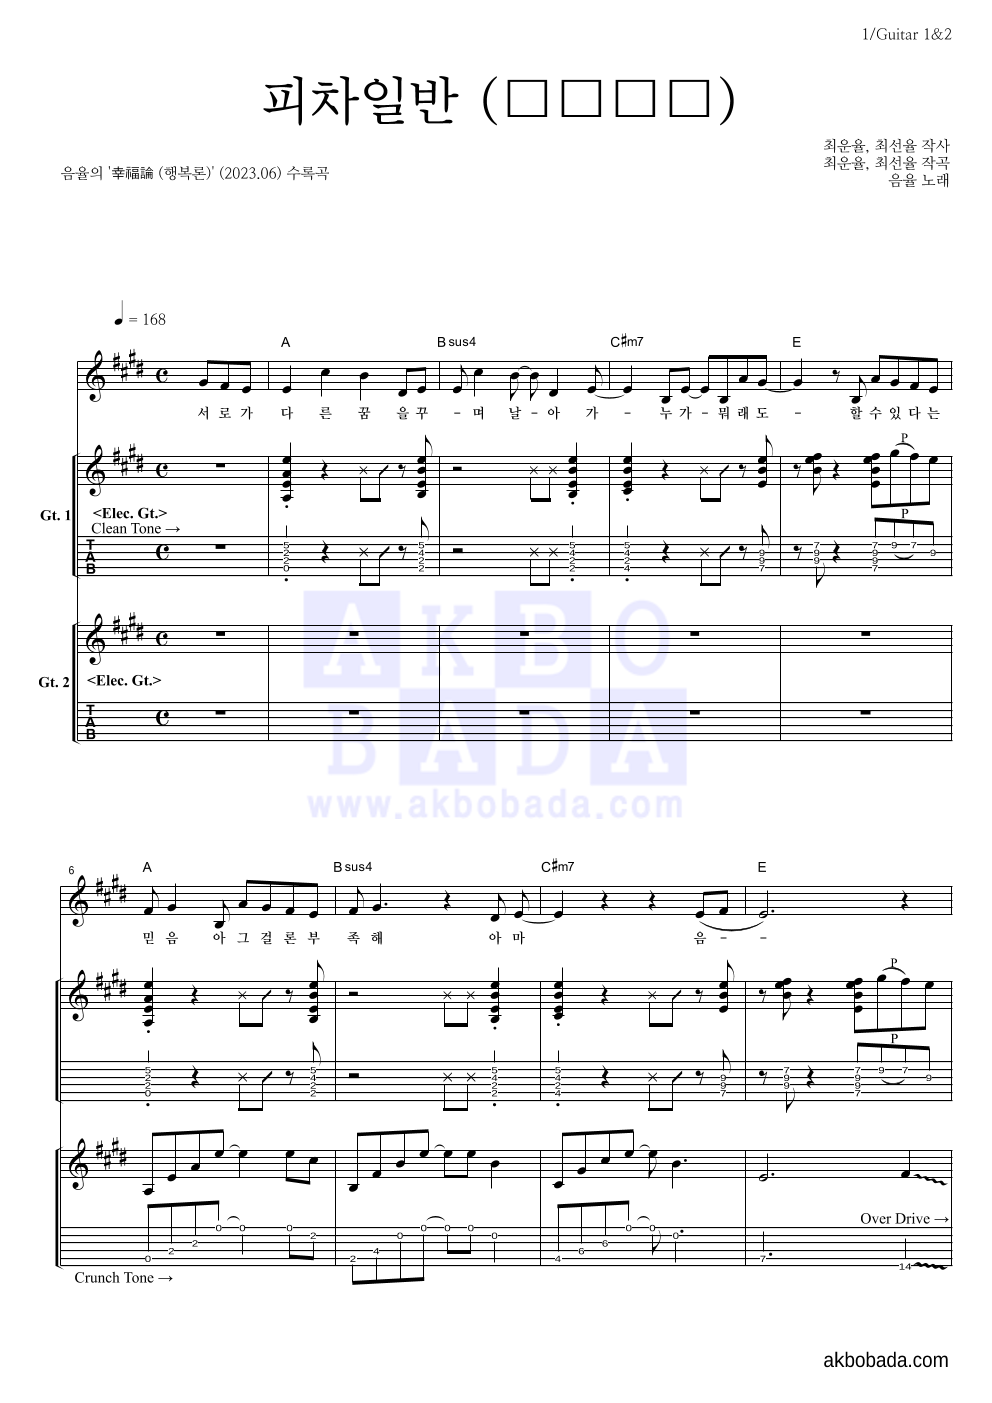 음율 - 피차일반 (彼此一般) 기타1,2 악보 